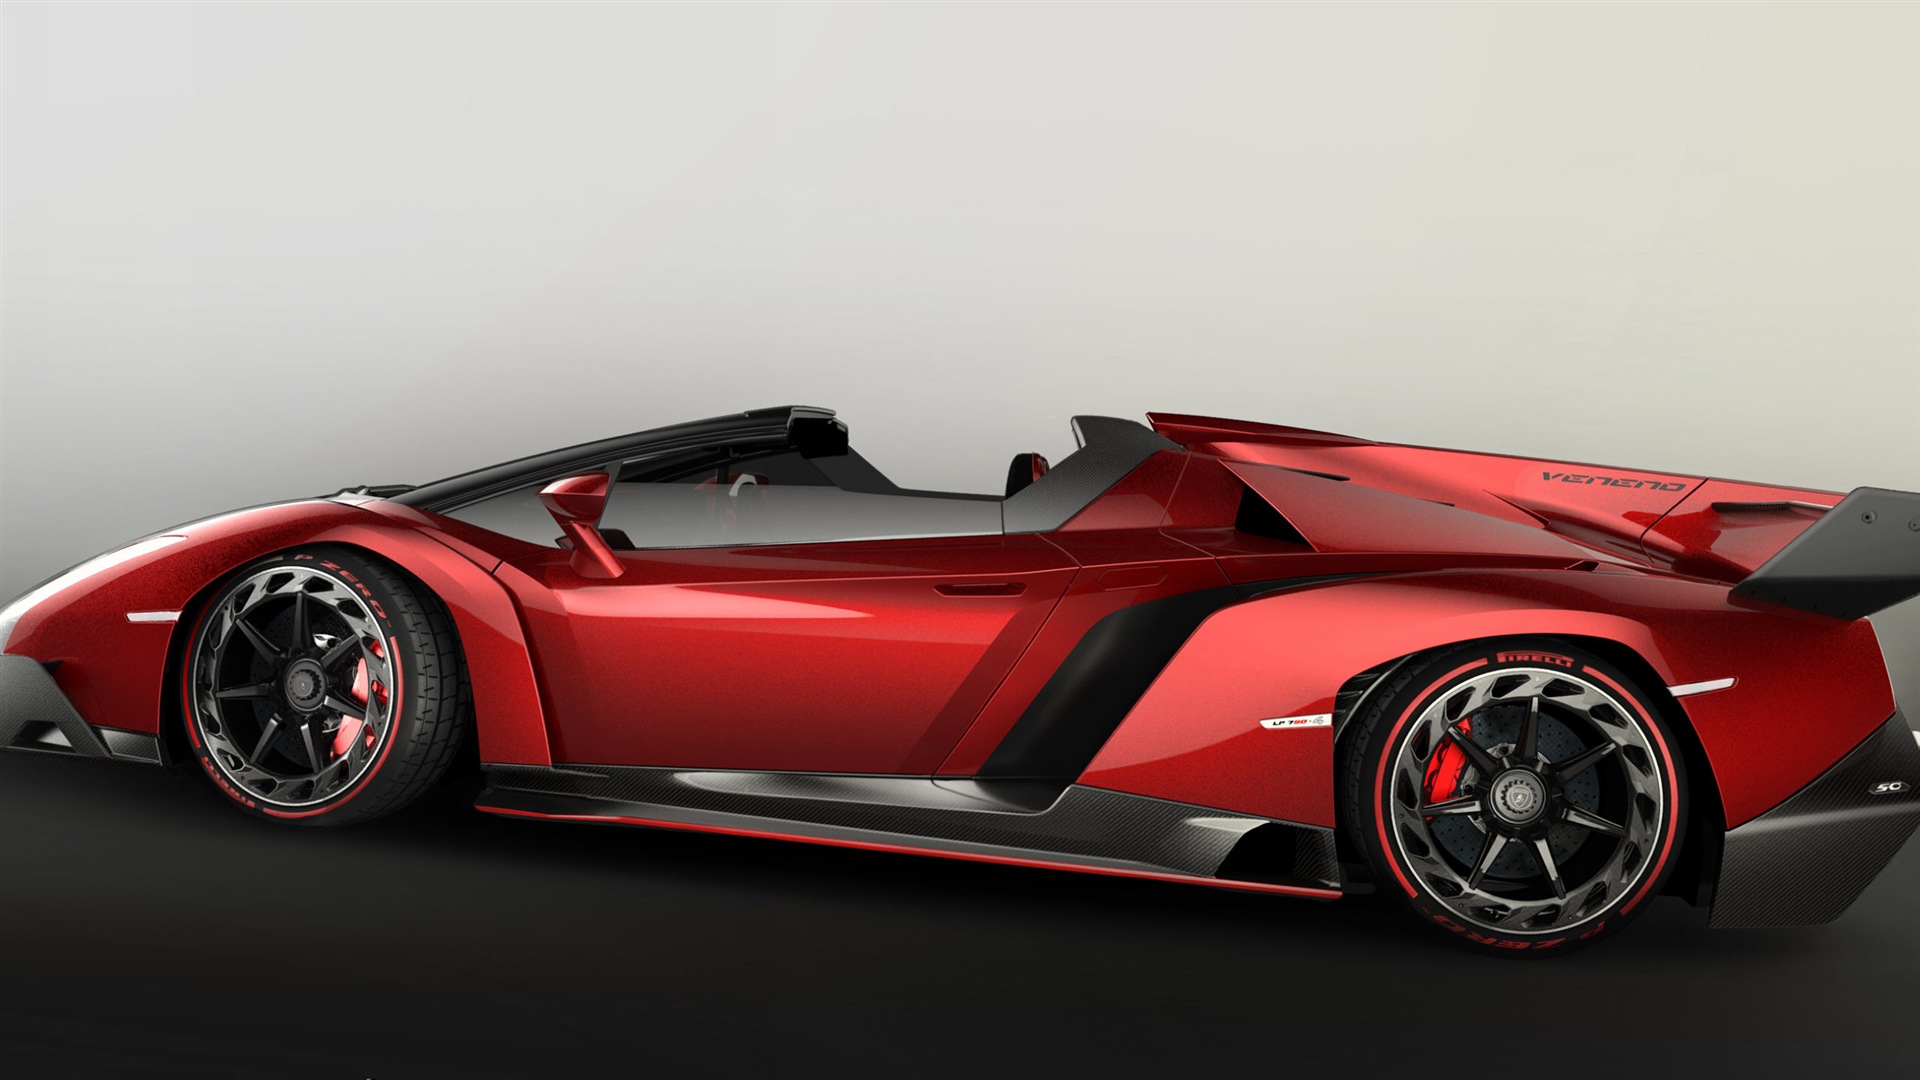 2014 Lamborghini Veneno Roadster red supercar HD wallpapers #4 - 1920x1080